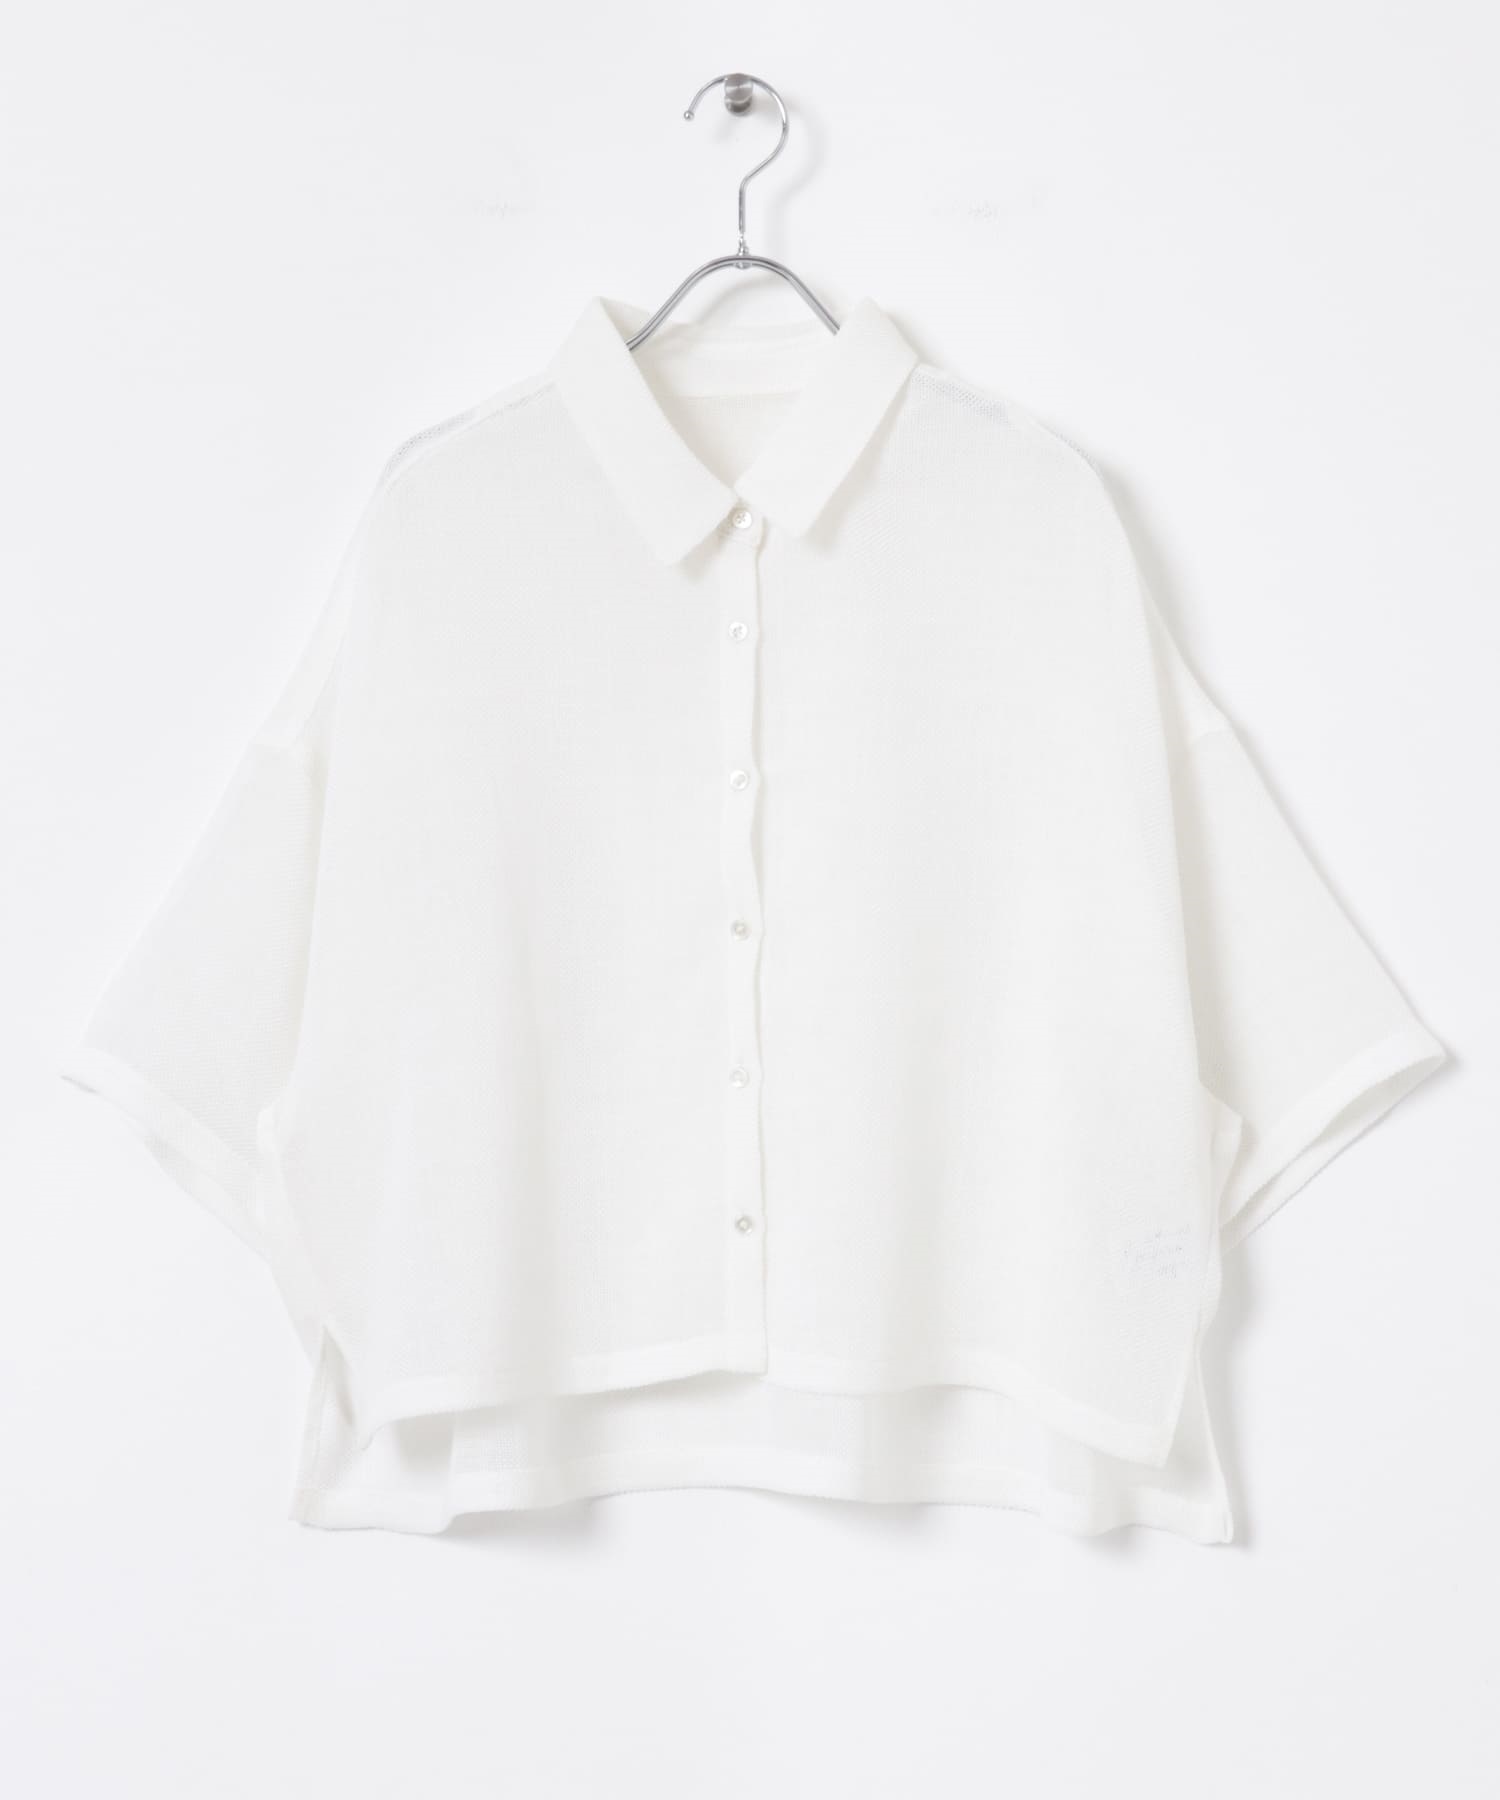 紗羅短版襯衫(米色-FREE-OFF WHITE)